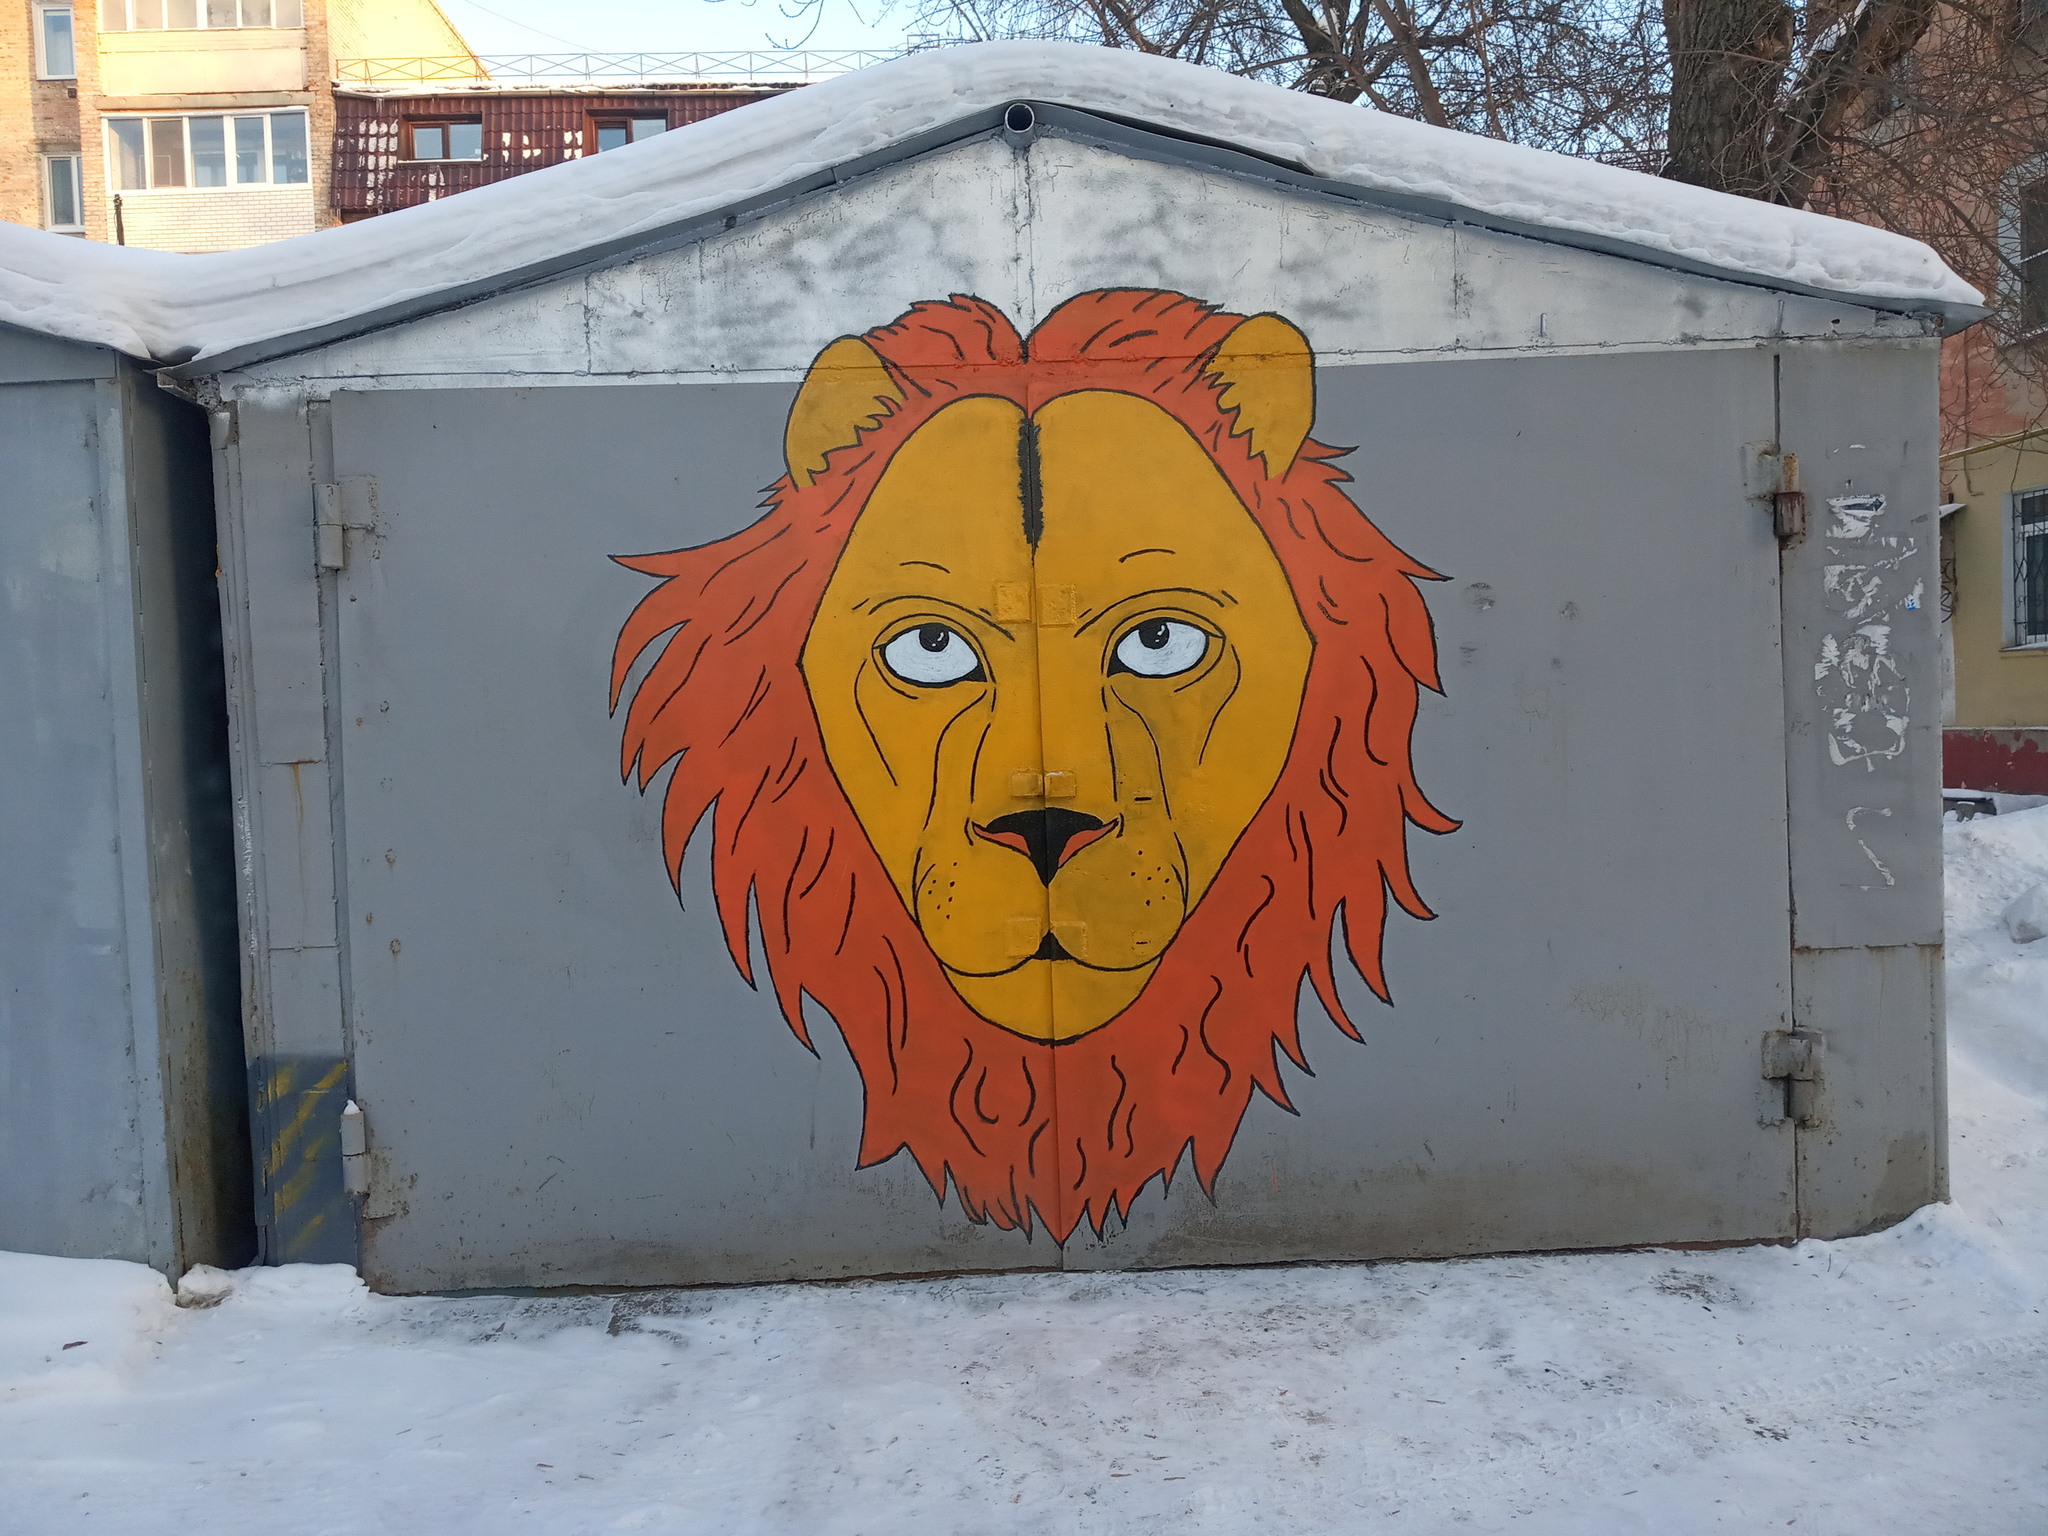 The keeper - My, Garage Art, a lion, Daub, Art, Street art